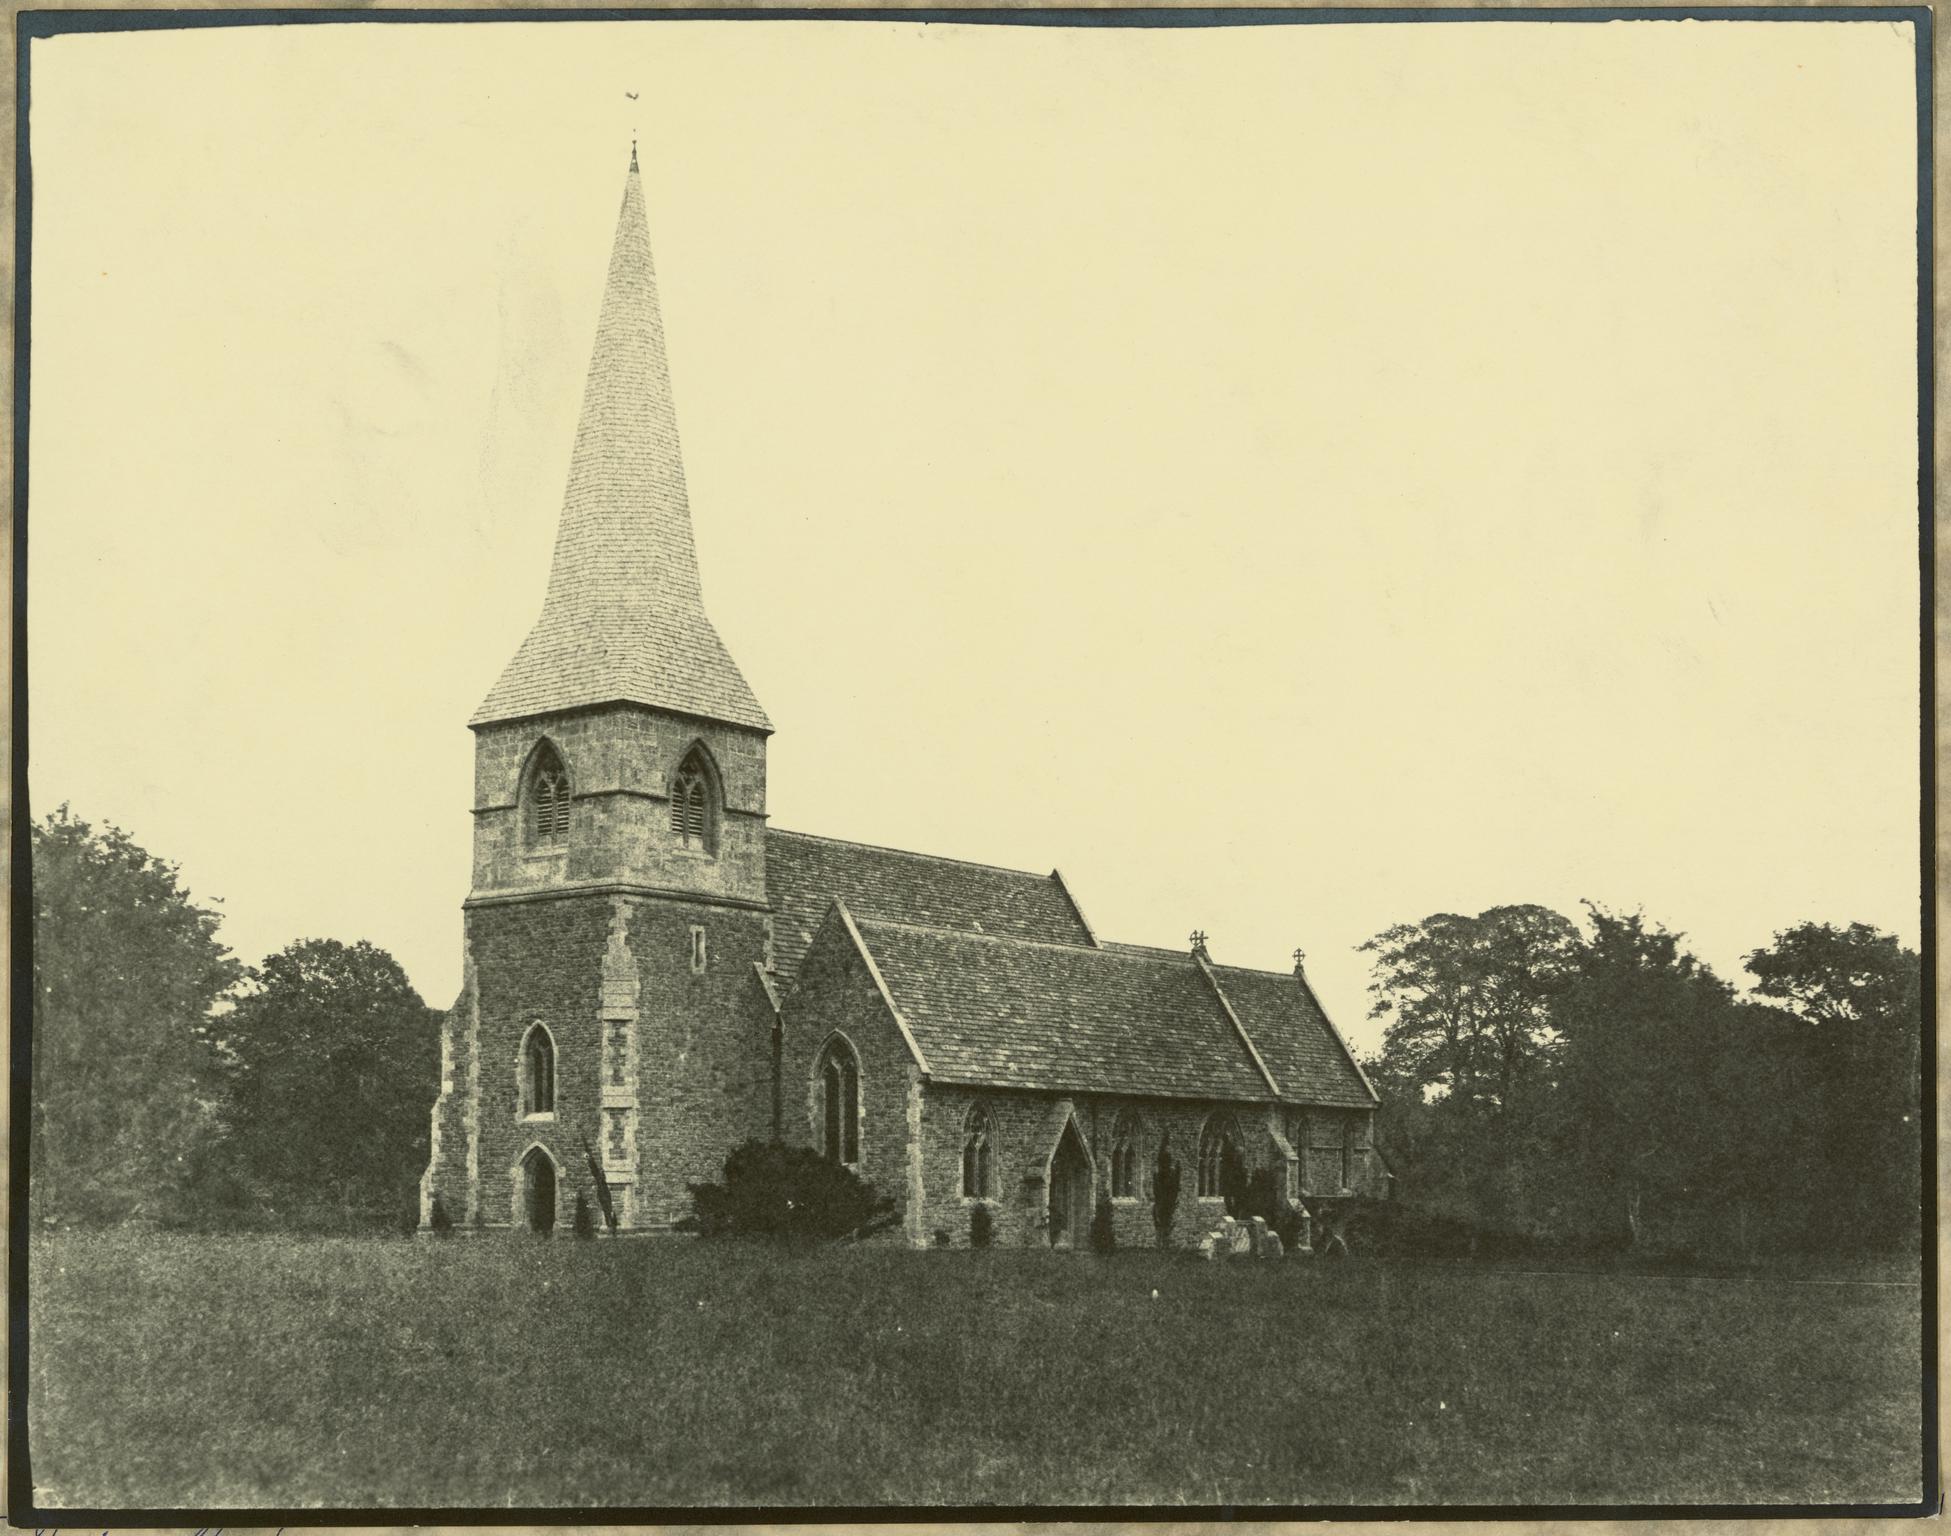 Sketty Church